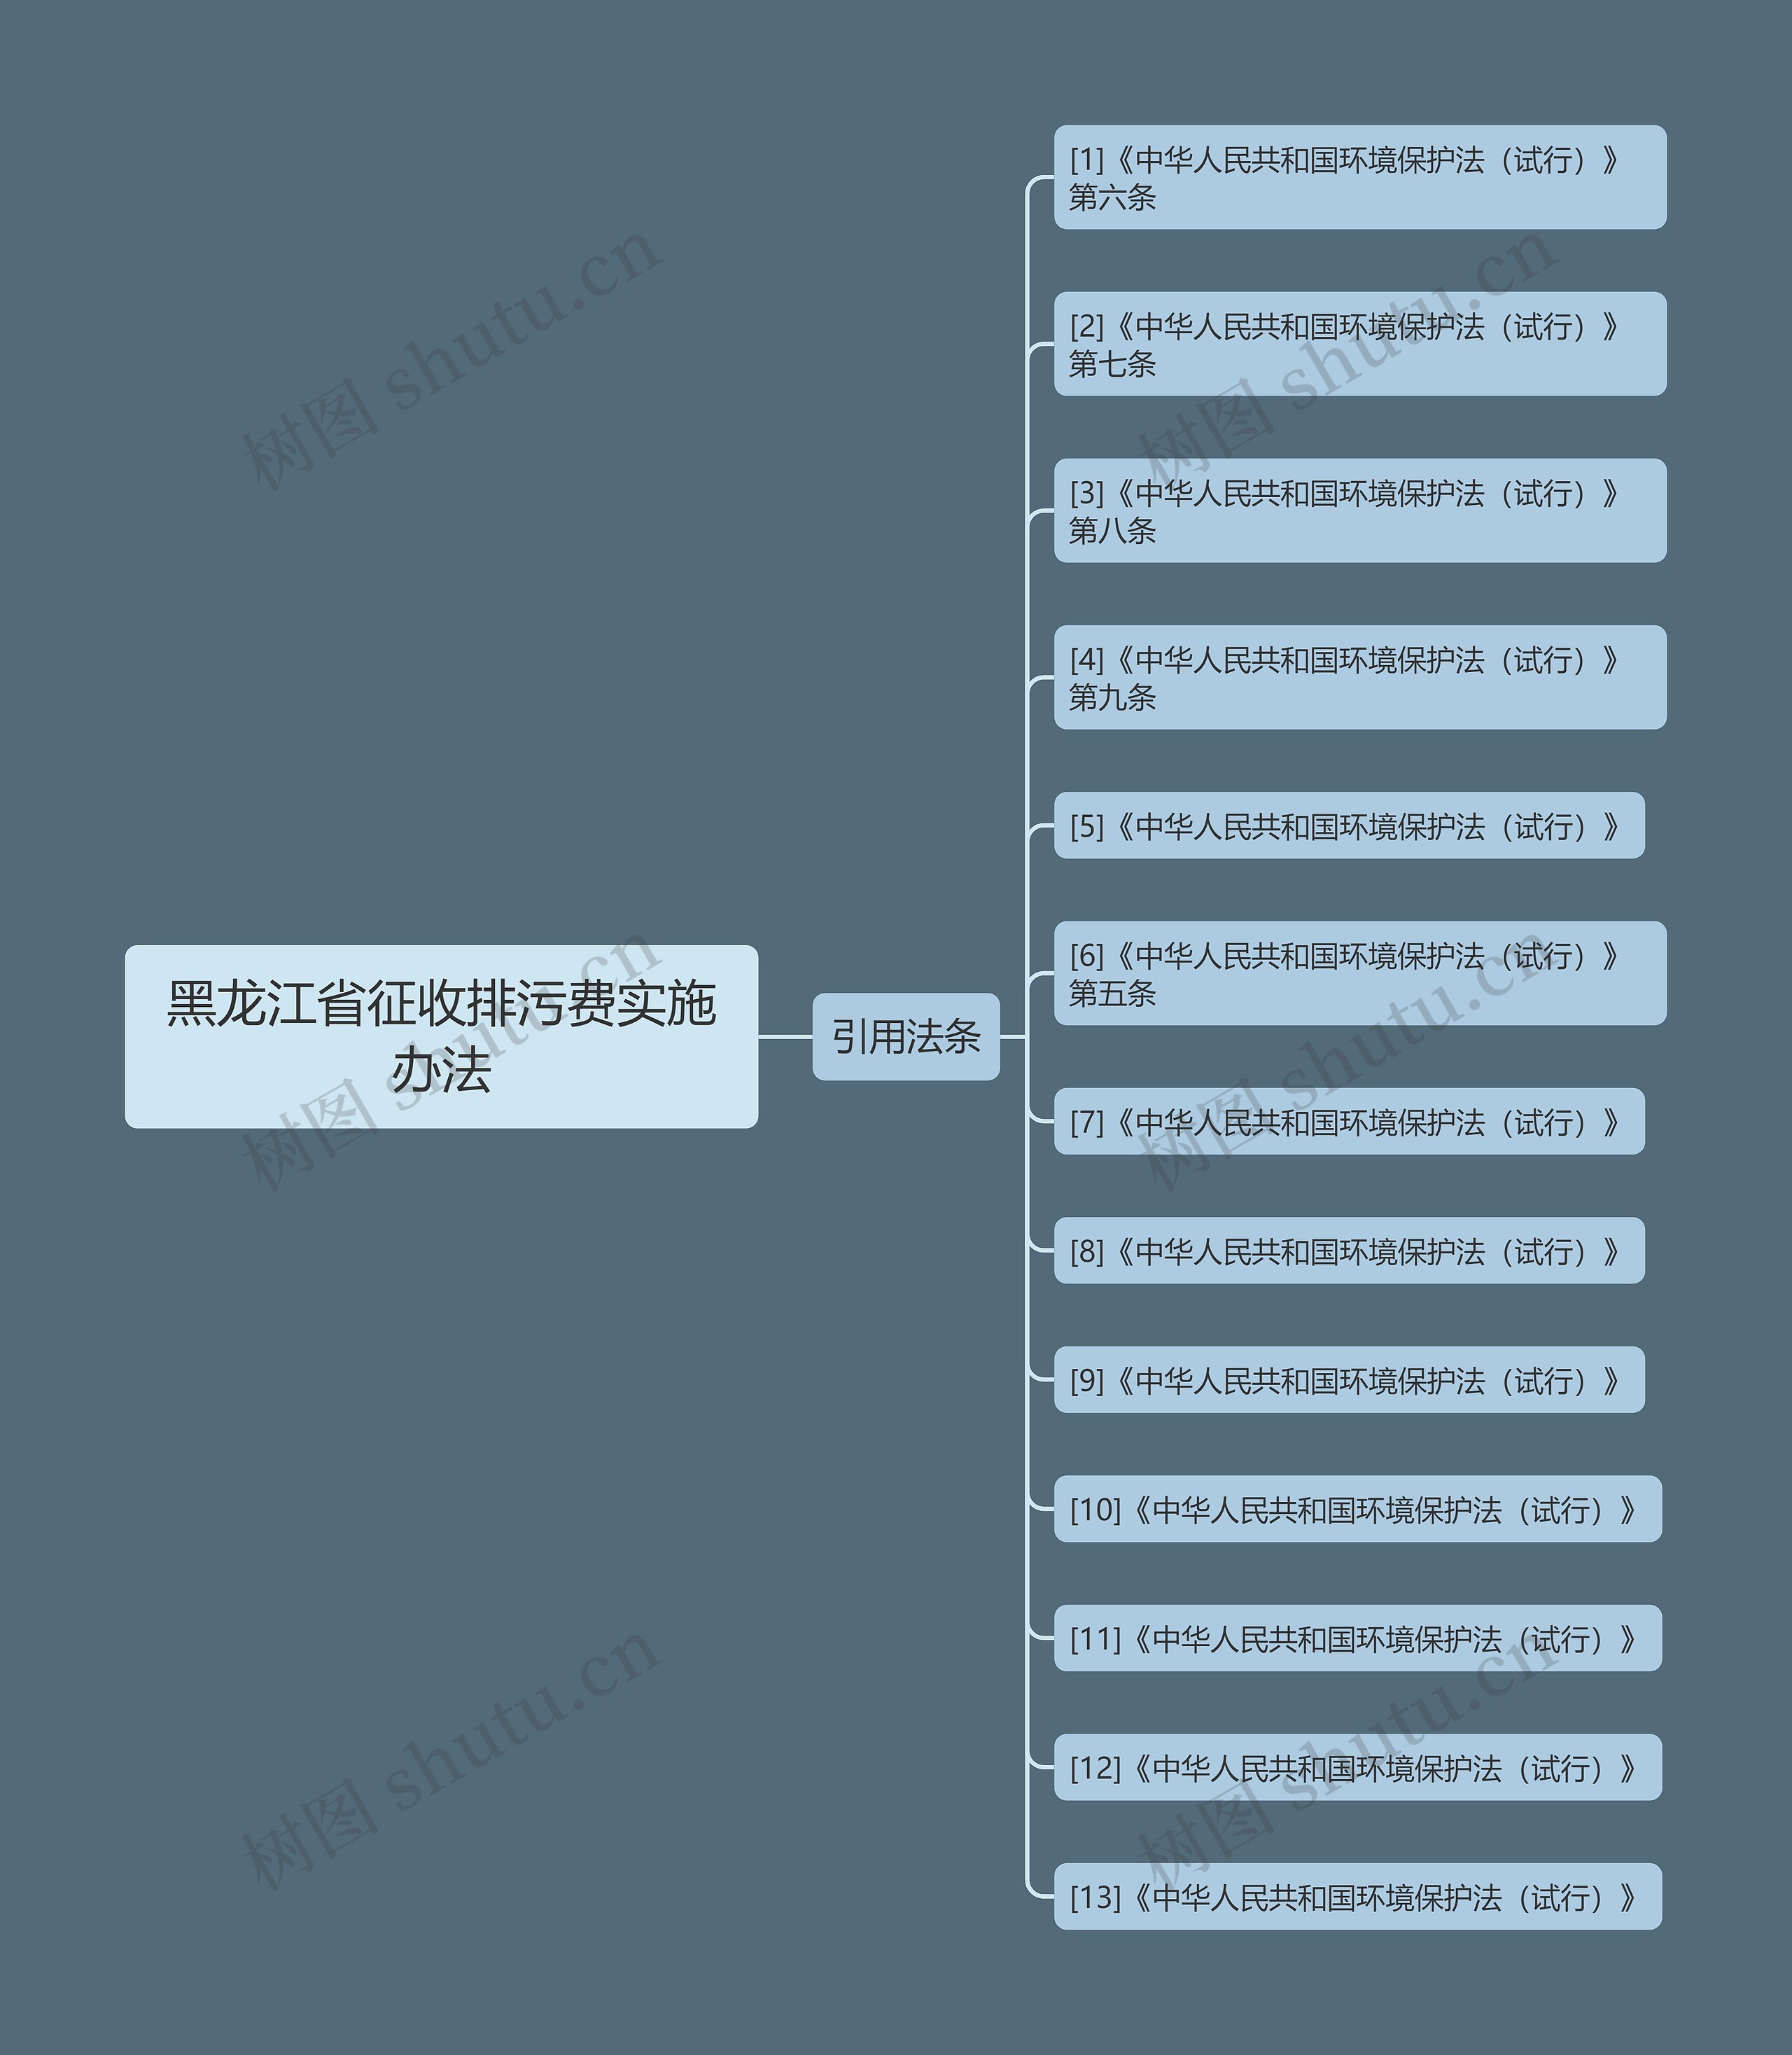 黑龙江省征收排污费实施办法